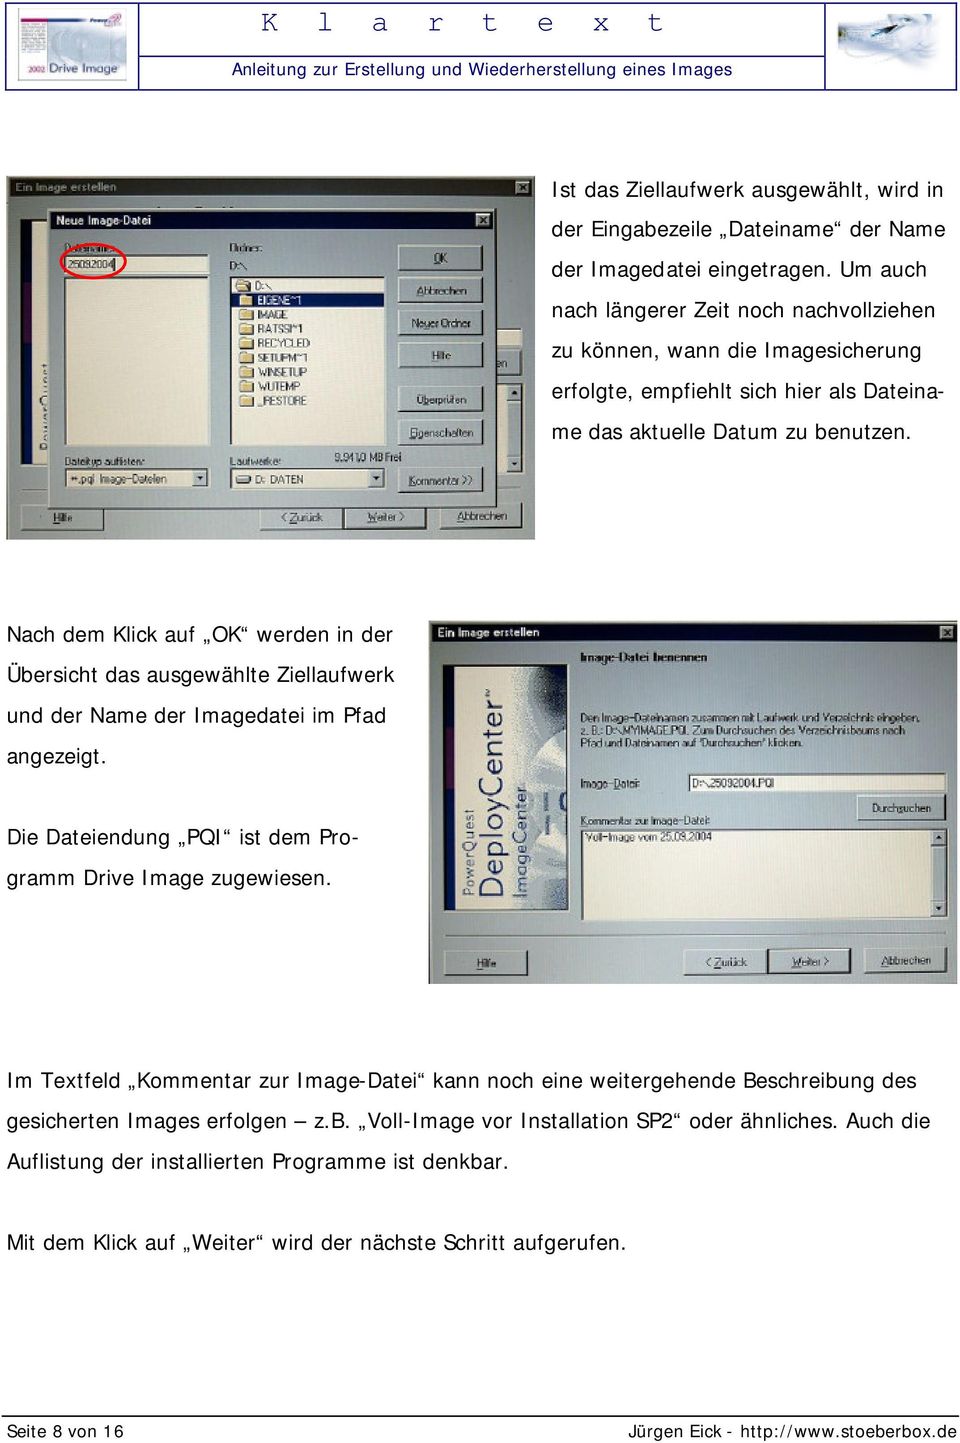 Nach dem Klick auf OK werden in der Übersicht das ausgewählte Ziellaufwerk und der Name der Imagedatei im Pfad angezeigt. Die Dateiendung PQI ist dem Programm Drive Image zugewiesen.